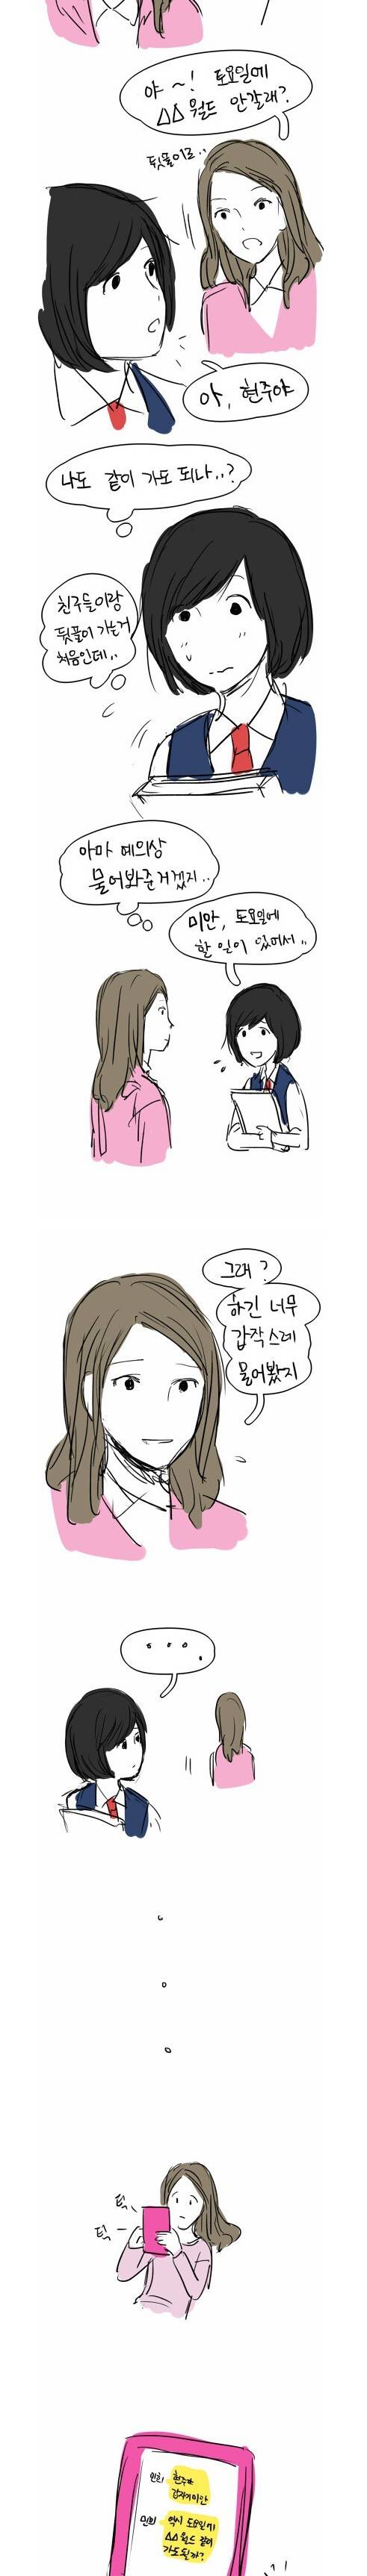 [스으압] 일진녀와 모범녀 만화.jpg